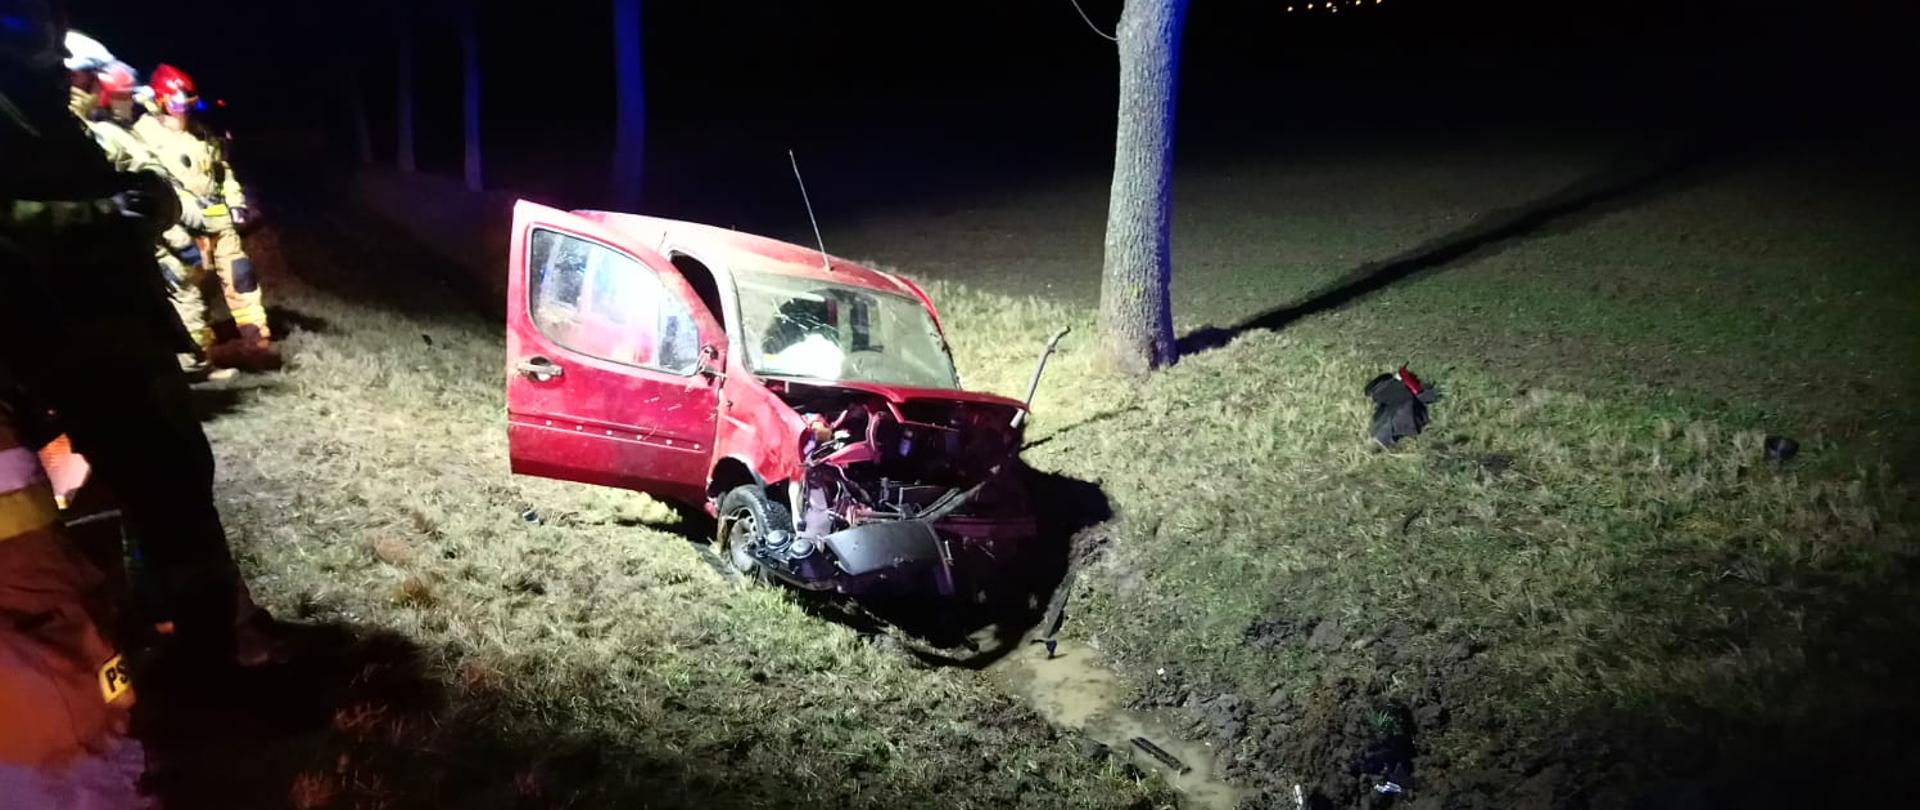 Wypadek samochodu osobowego na DK 39 w pobliżu Michałowic